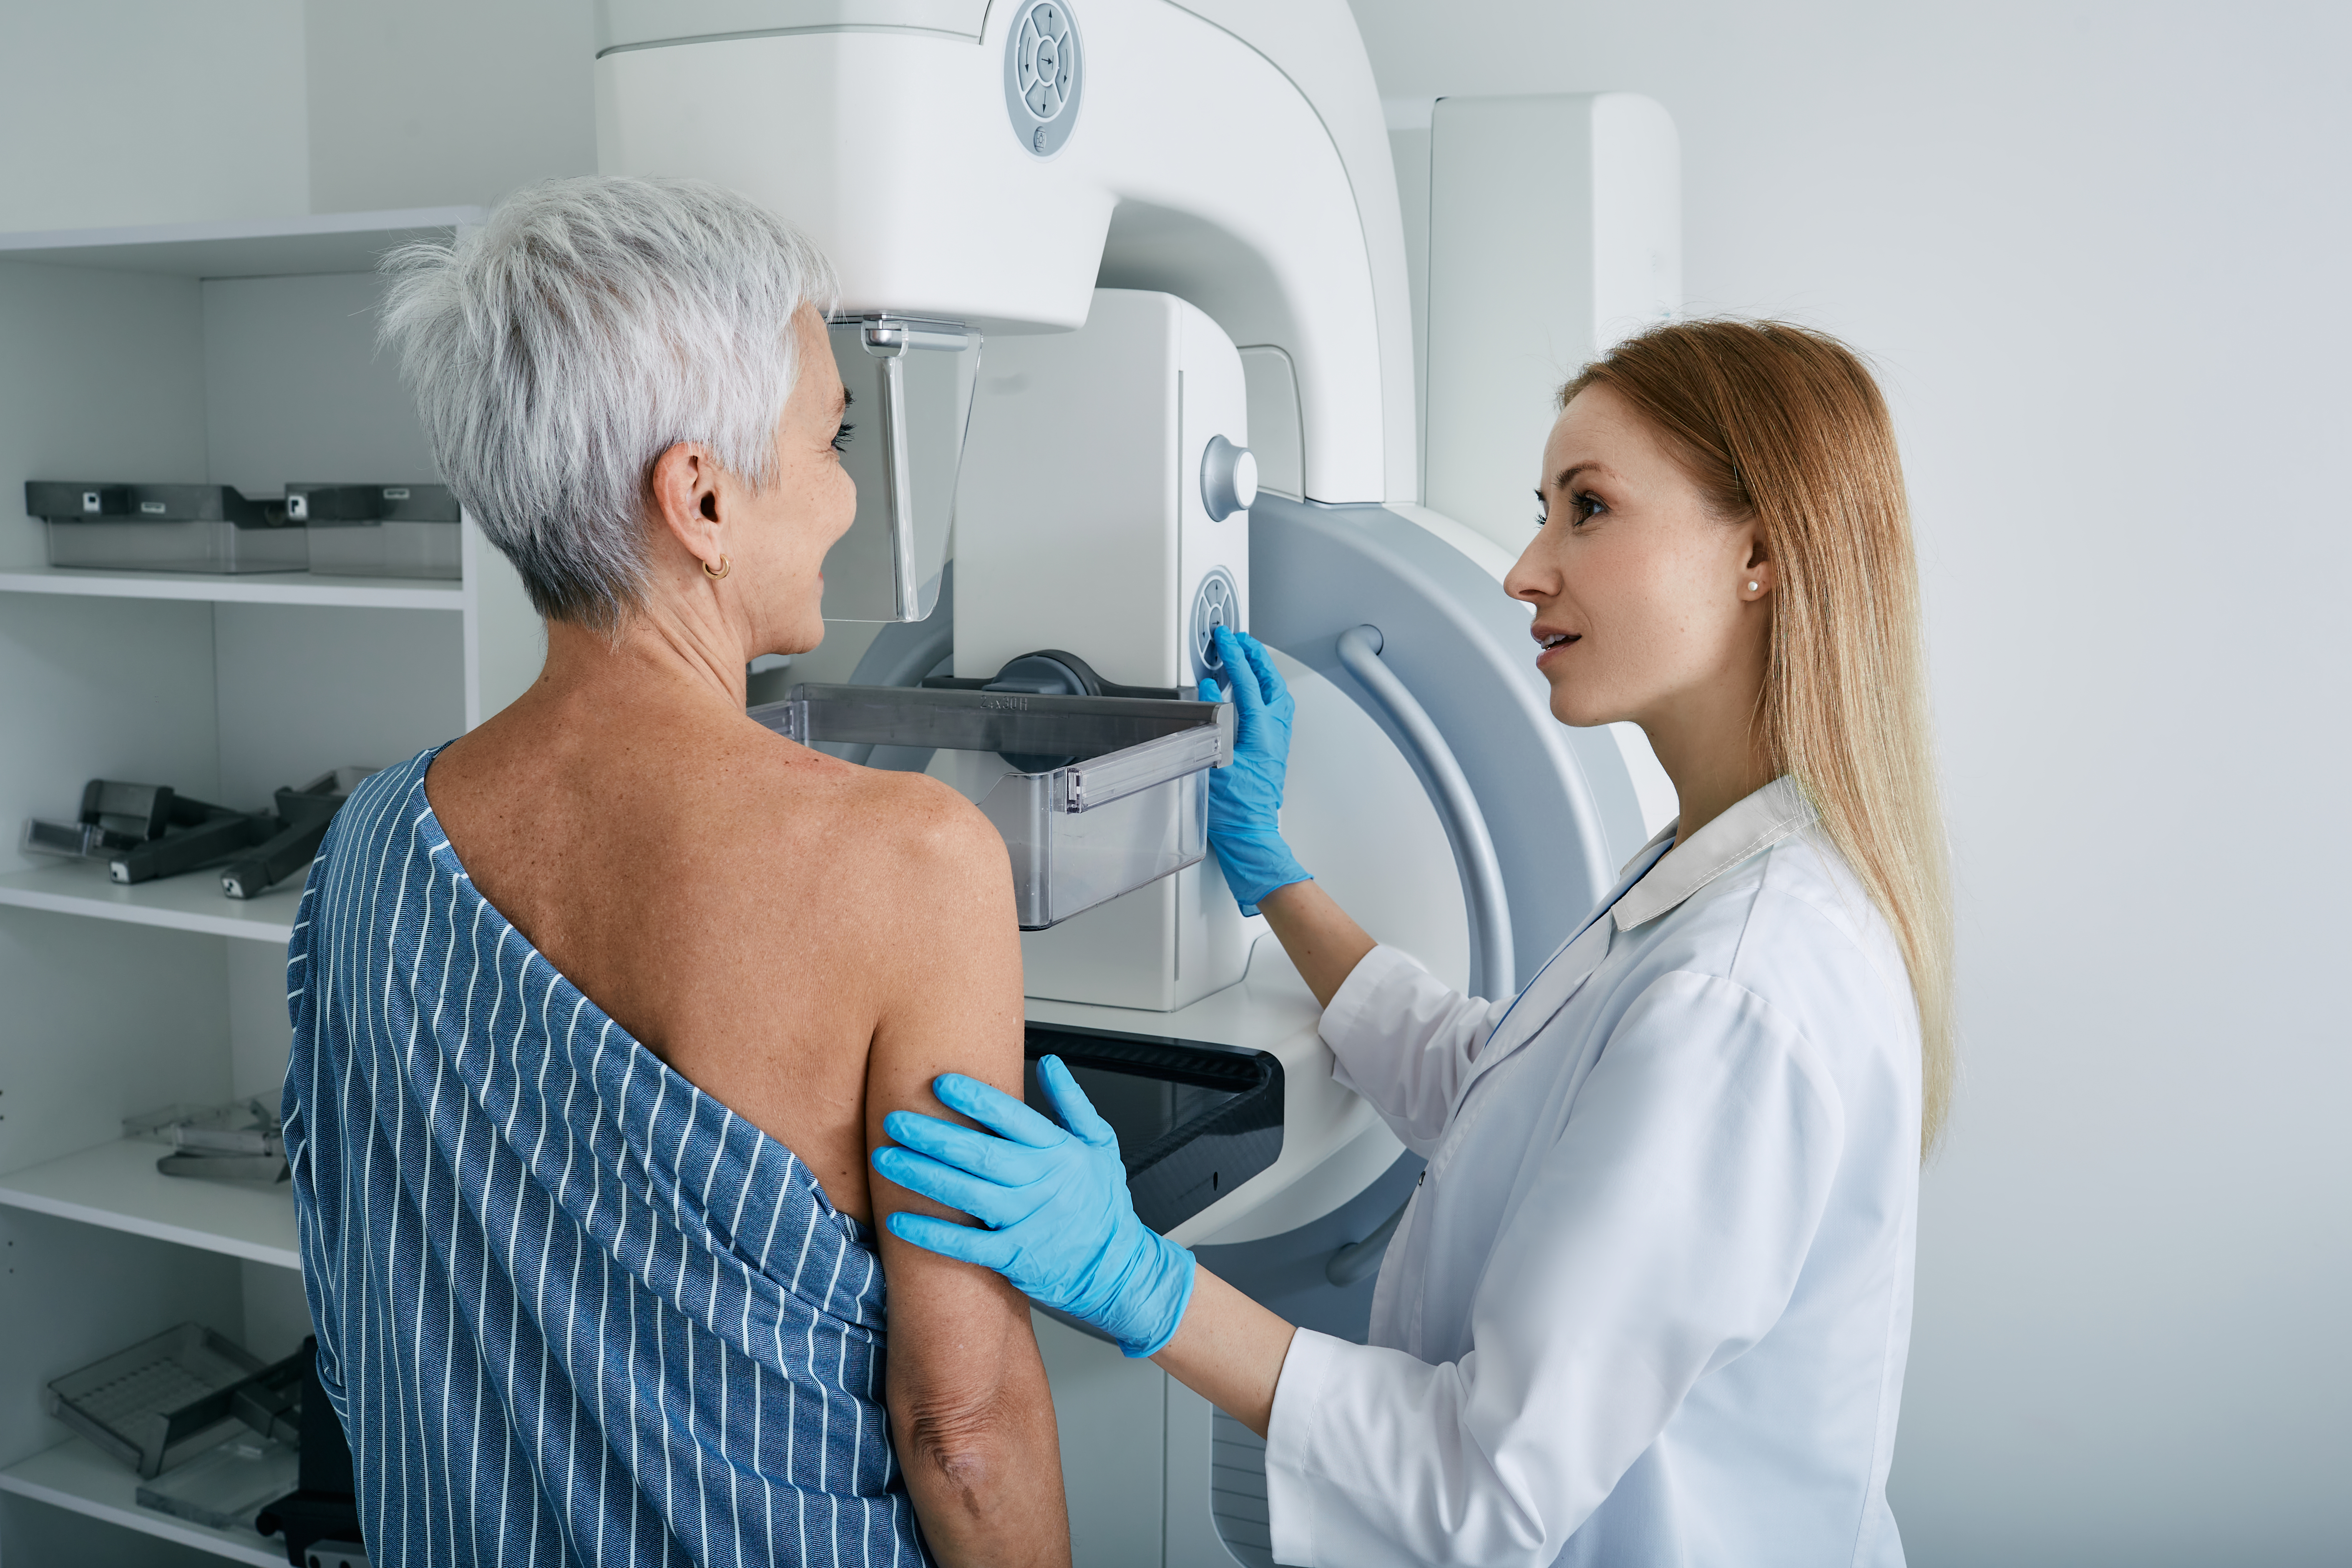 Das neue Gerät ist viel schneller als eine Mammographie, die Krankenhäuser derzeit zur Brustkrebsvorsorge verwenden